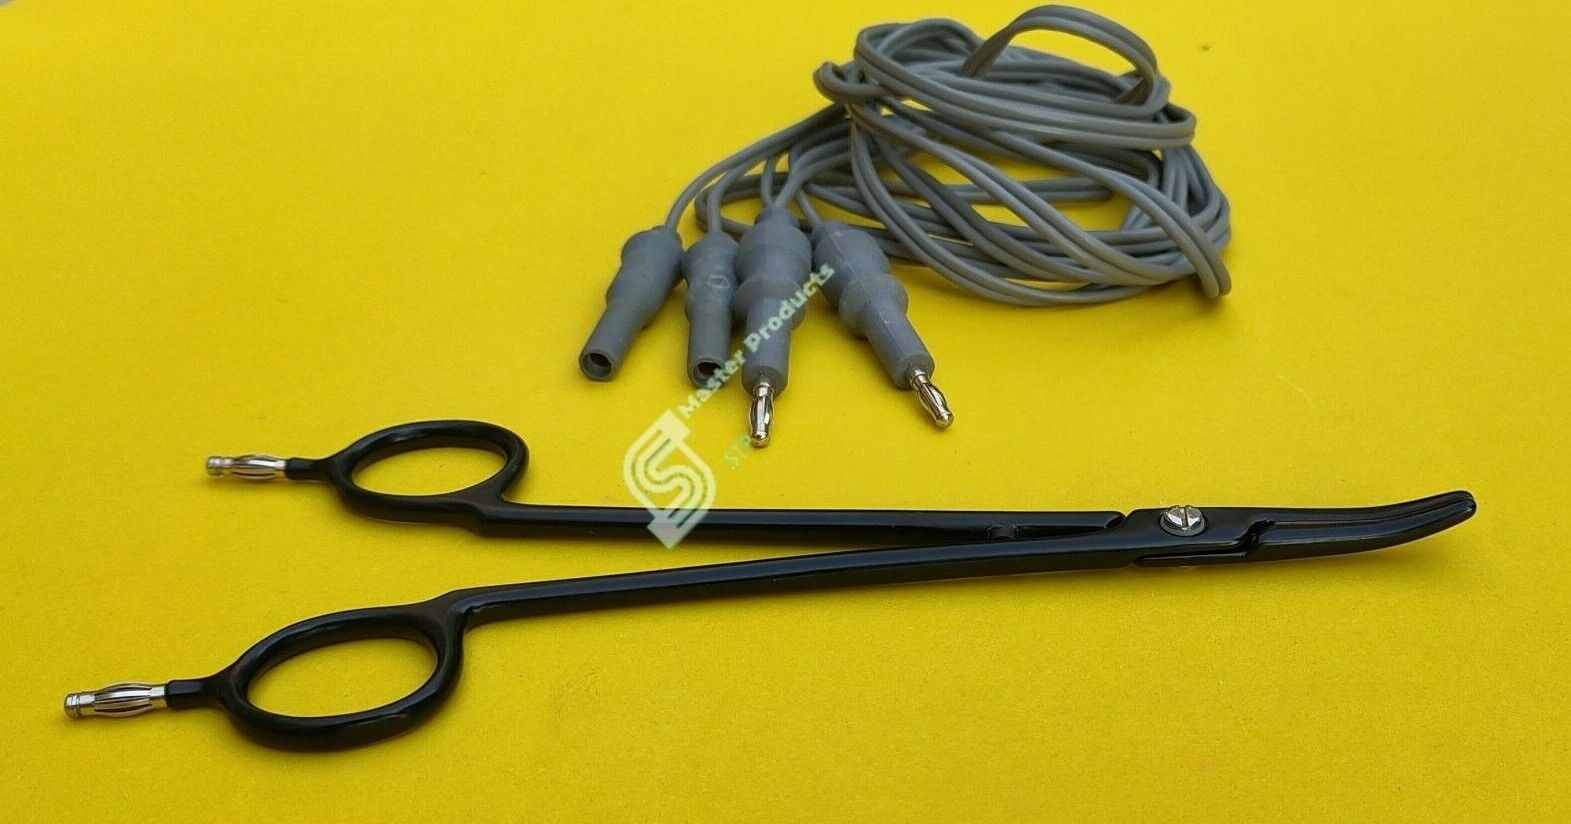 Reusable Nonstick Bipolar Artery Sealer Clamp 6.5" 4mm Pin with silicon cord